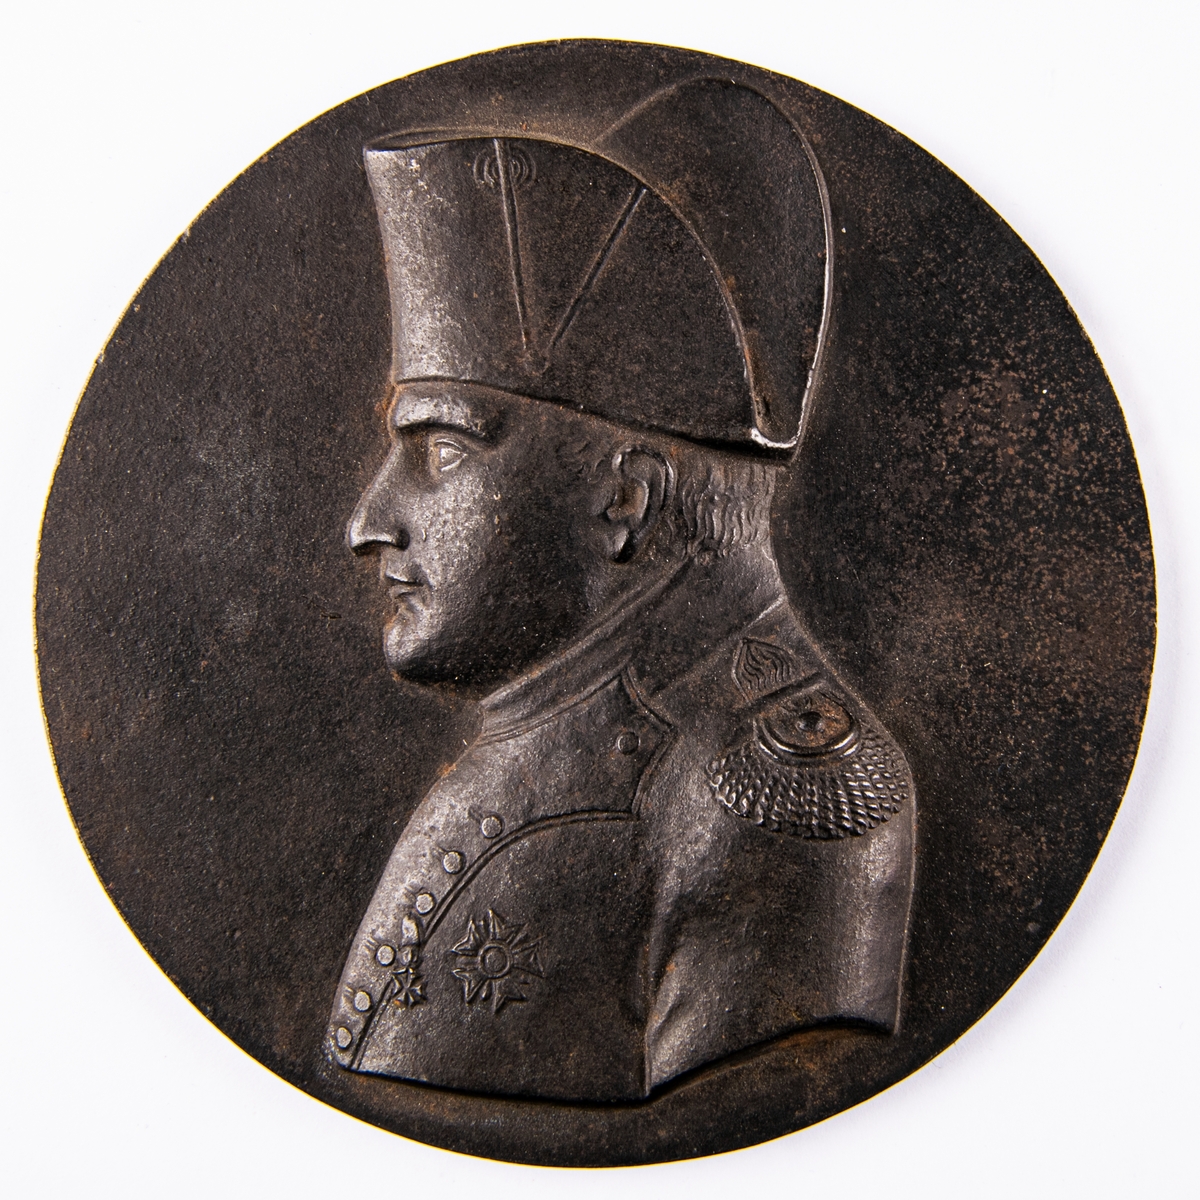 Porträttmedaljong föreställande Napoleon I. Järn.